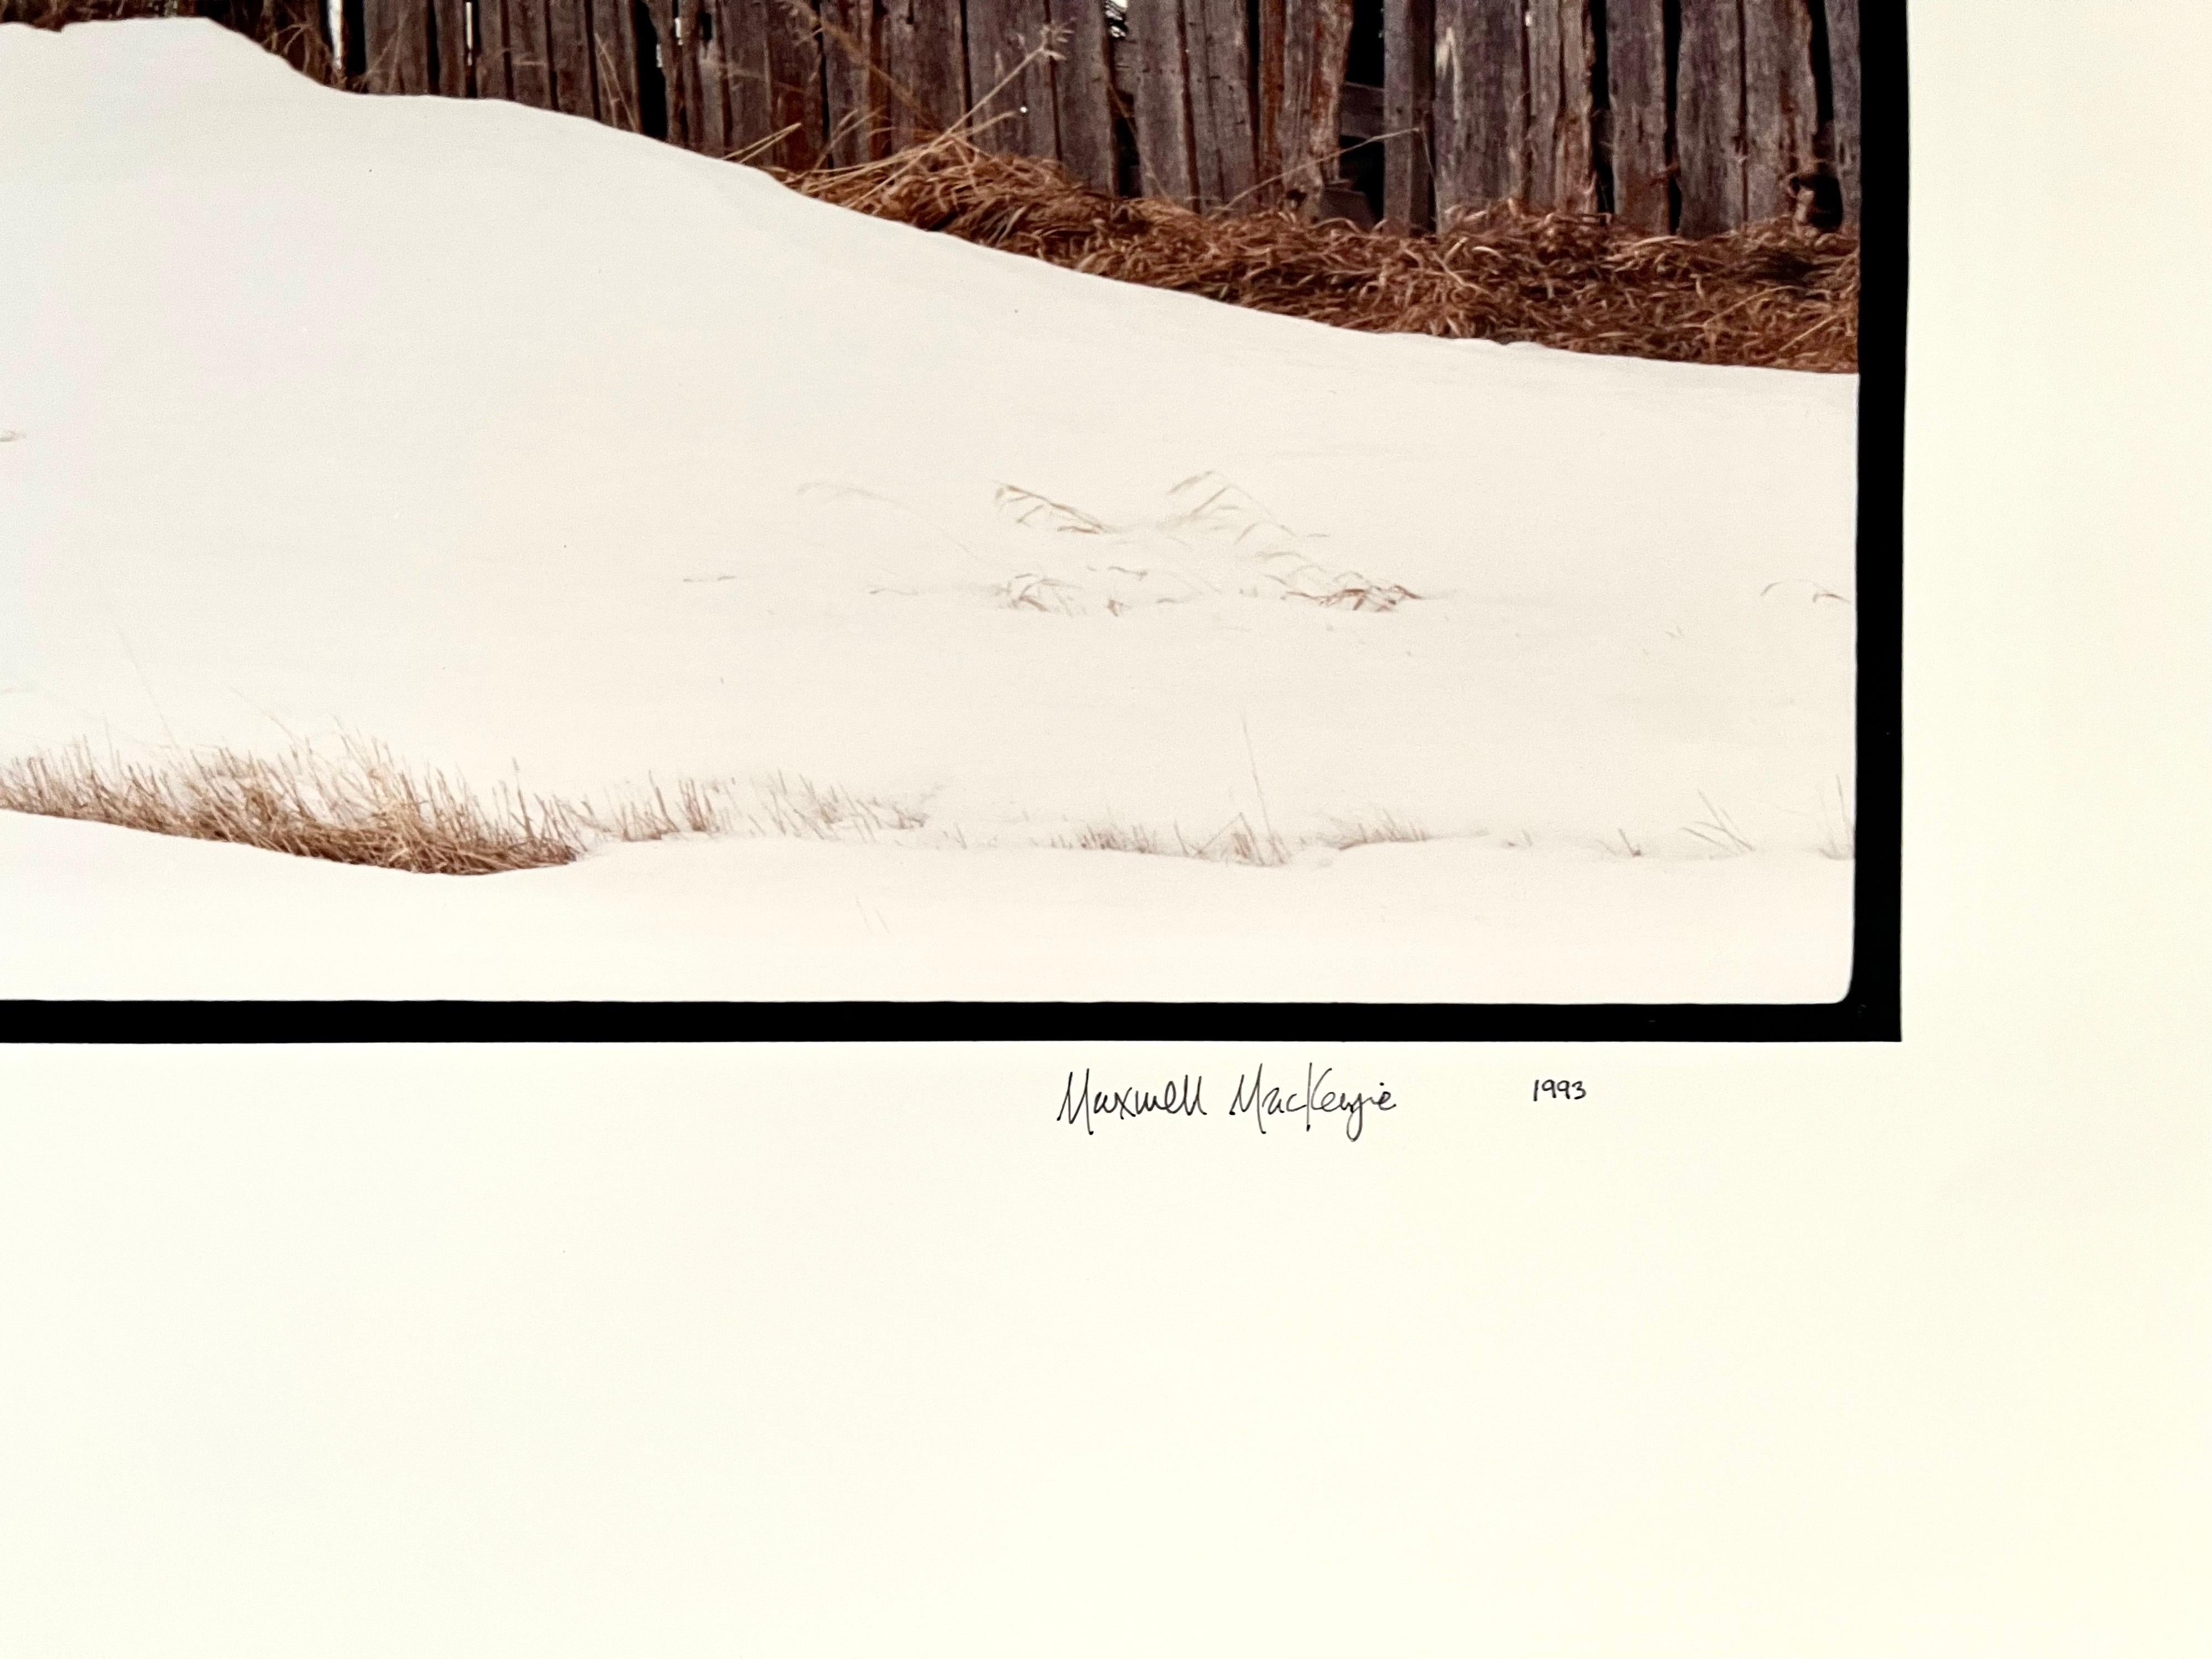 La ferme, paysage d'hiver, grande photographie Panoramique couleur vintage signée - Photograph de Maxwell Mackenzie